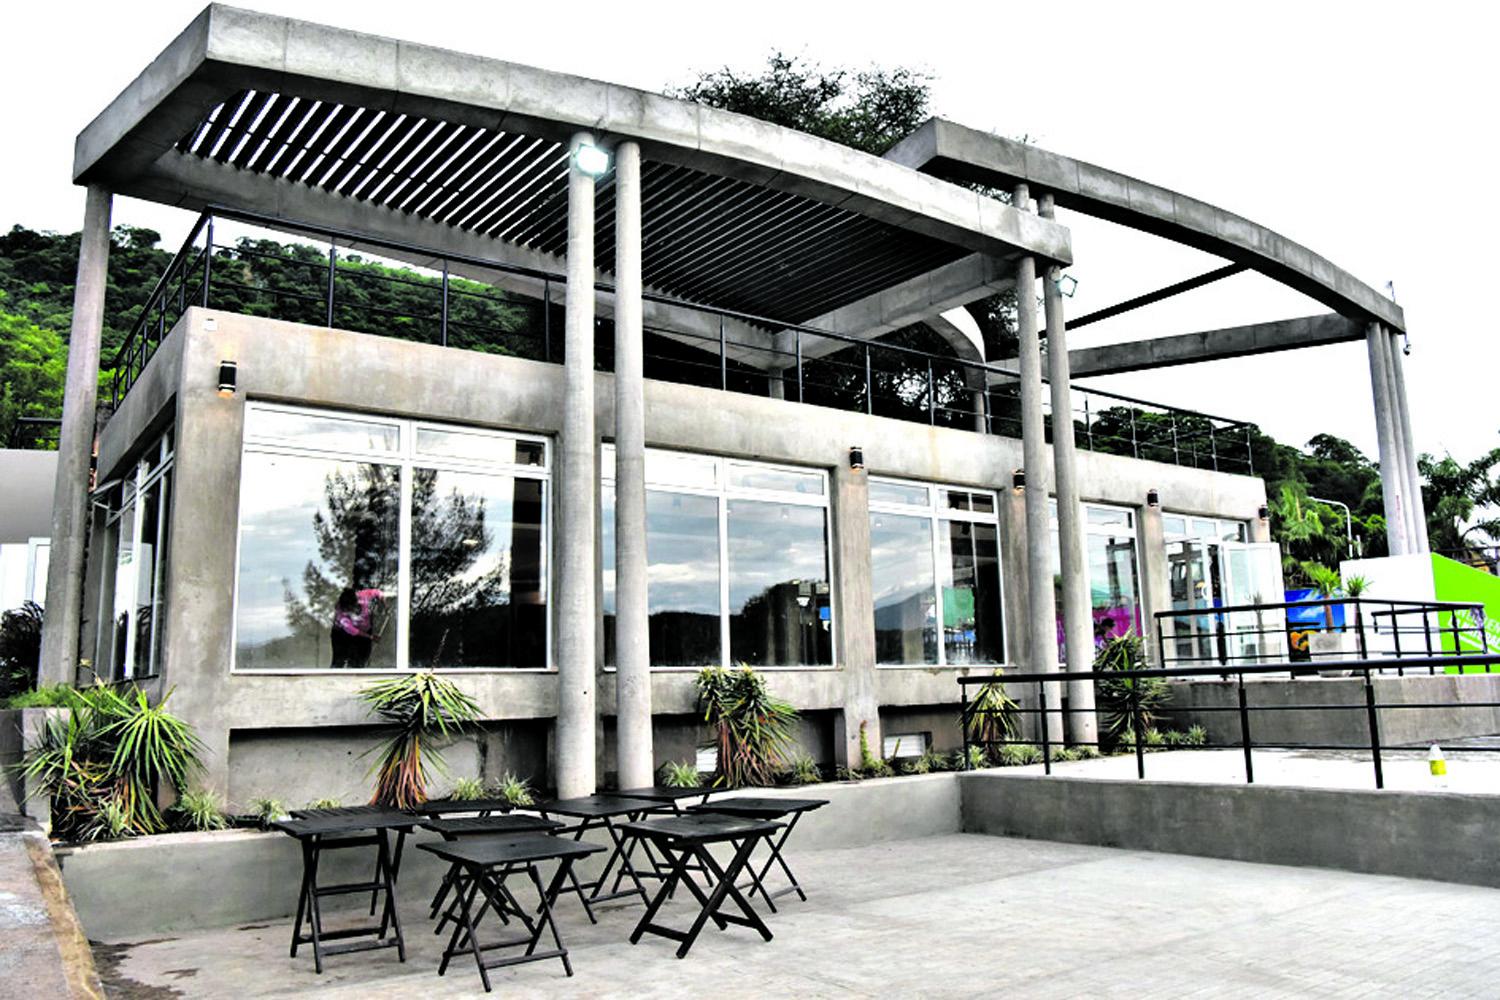 El edificio del nuevo restaurante Clara tiene tres niveles de terraza para admirar el paisaje